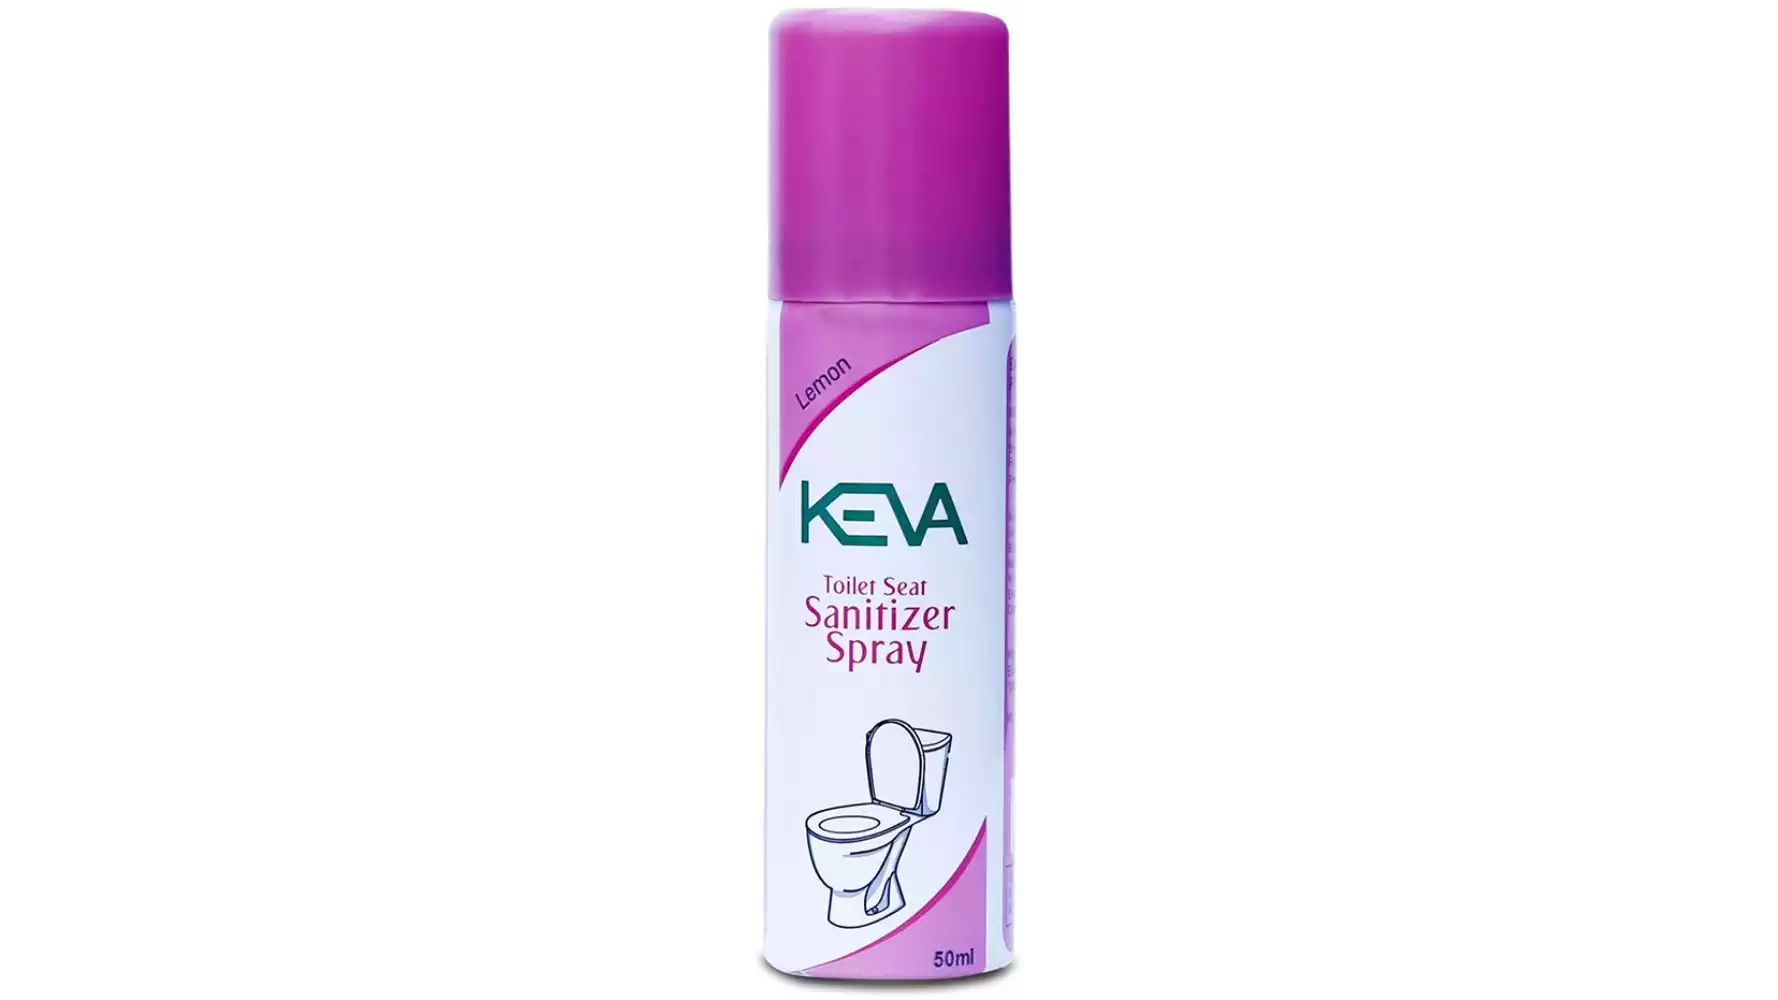 Keva Toilet Seat Sanitizer Spray (50ml)